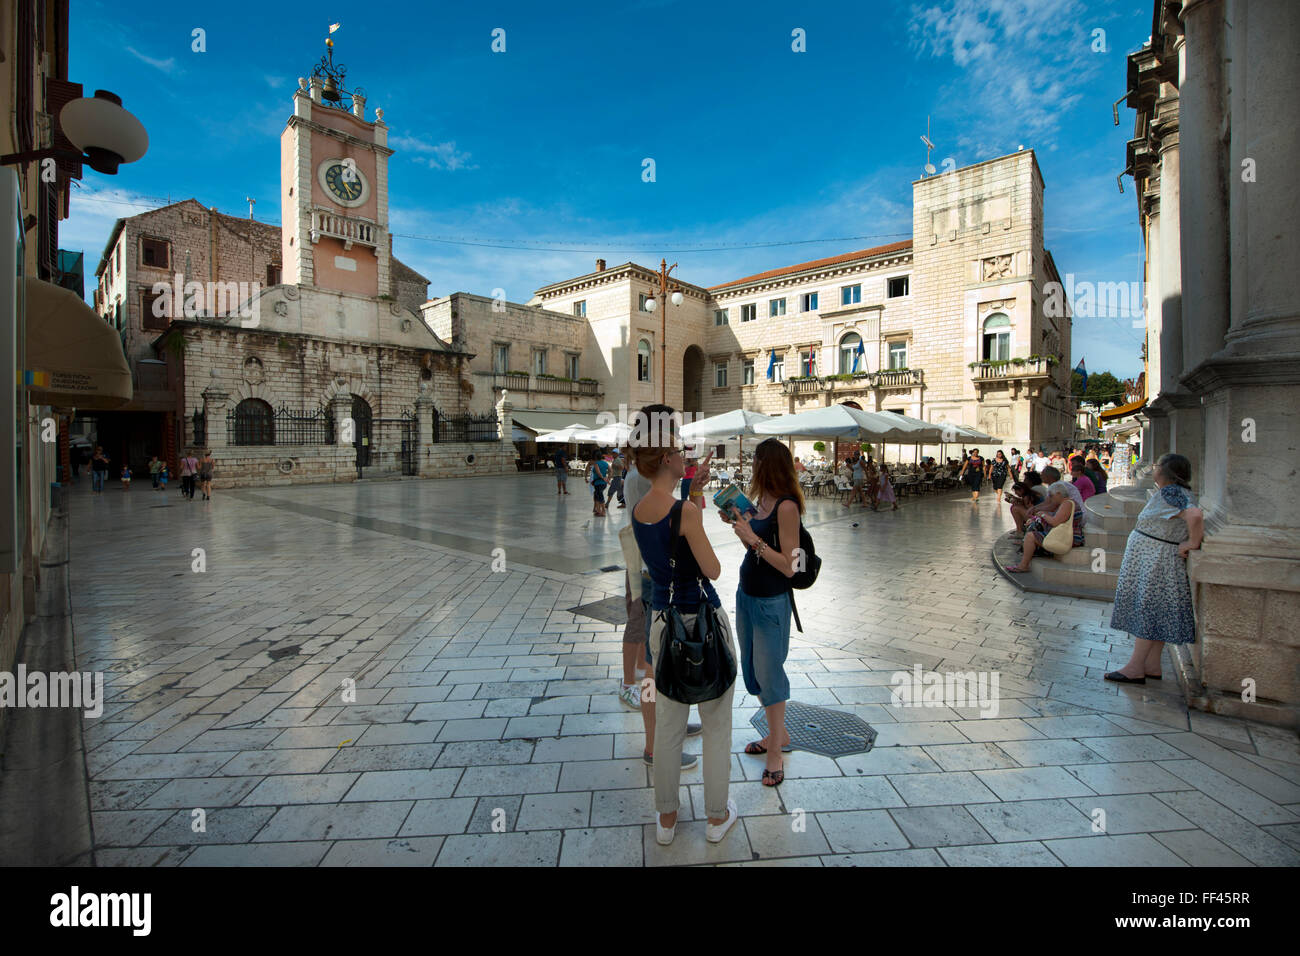 Kroatien, Dalmatien, Zadar, Narodni trg, Stadtwache mit Uhrturm und Rathaus Stock Photo